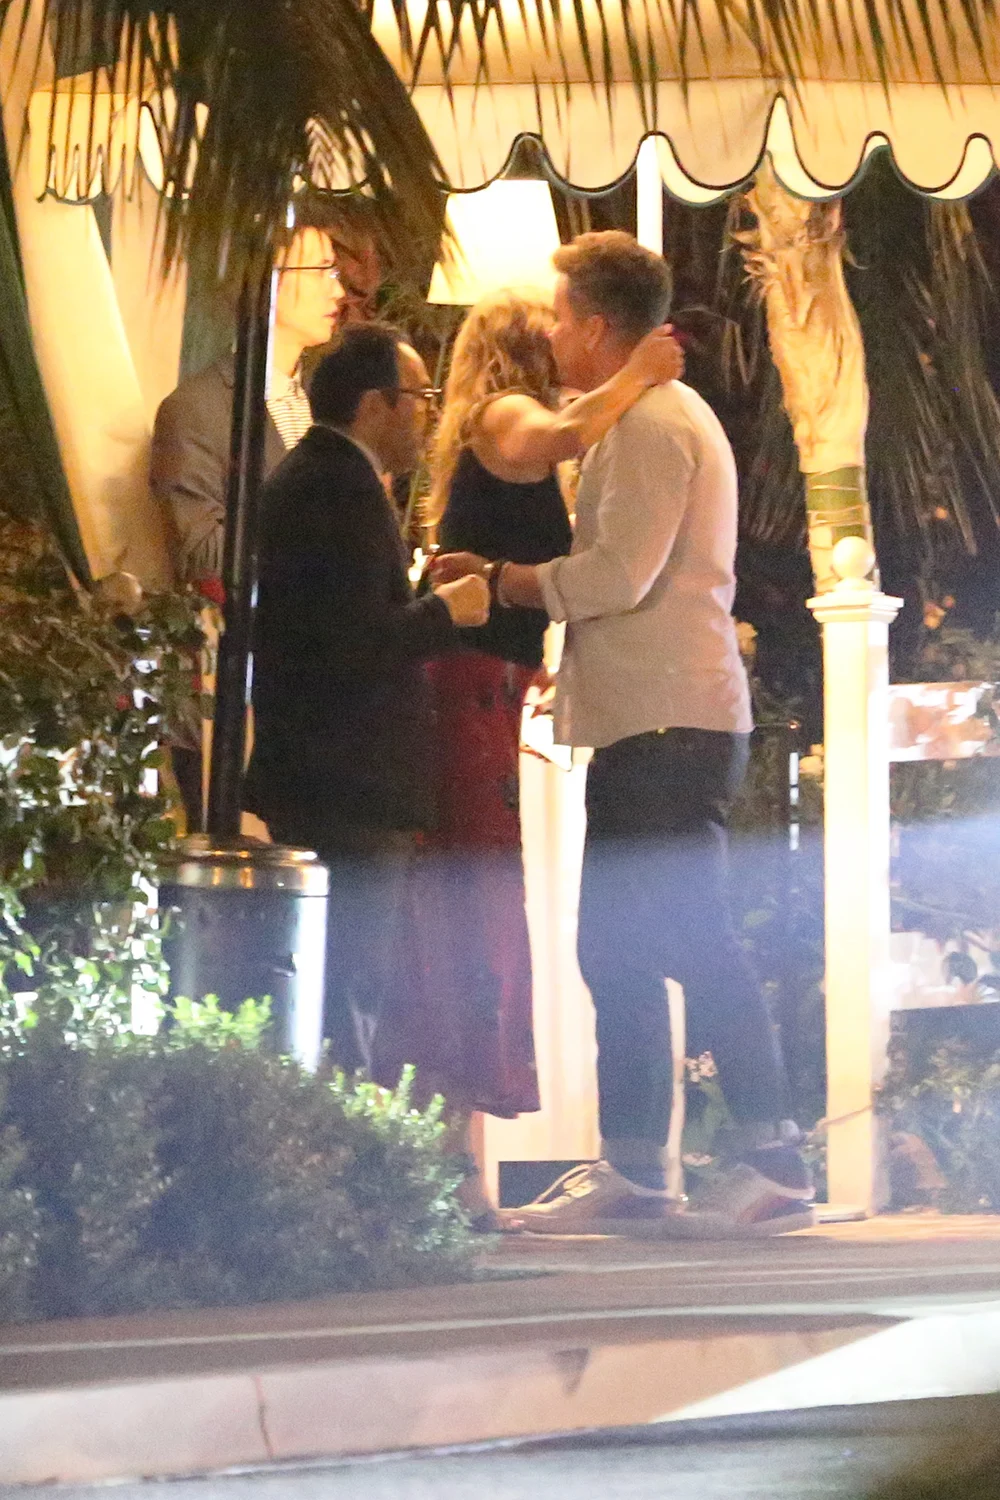 Дженнифер Энистон поцеловала загадочного мужчину, и это попало на фото – что известно - фото 441535